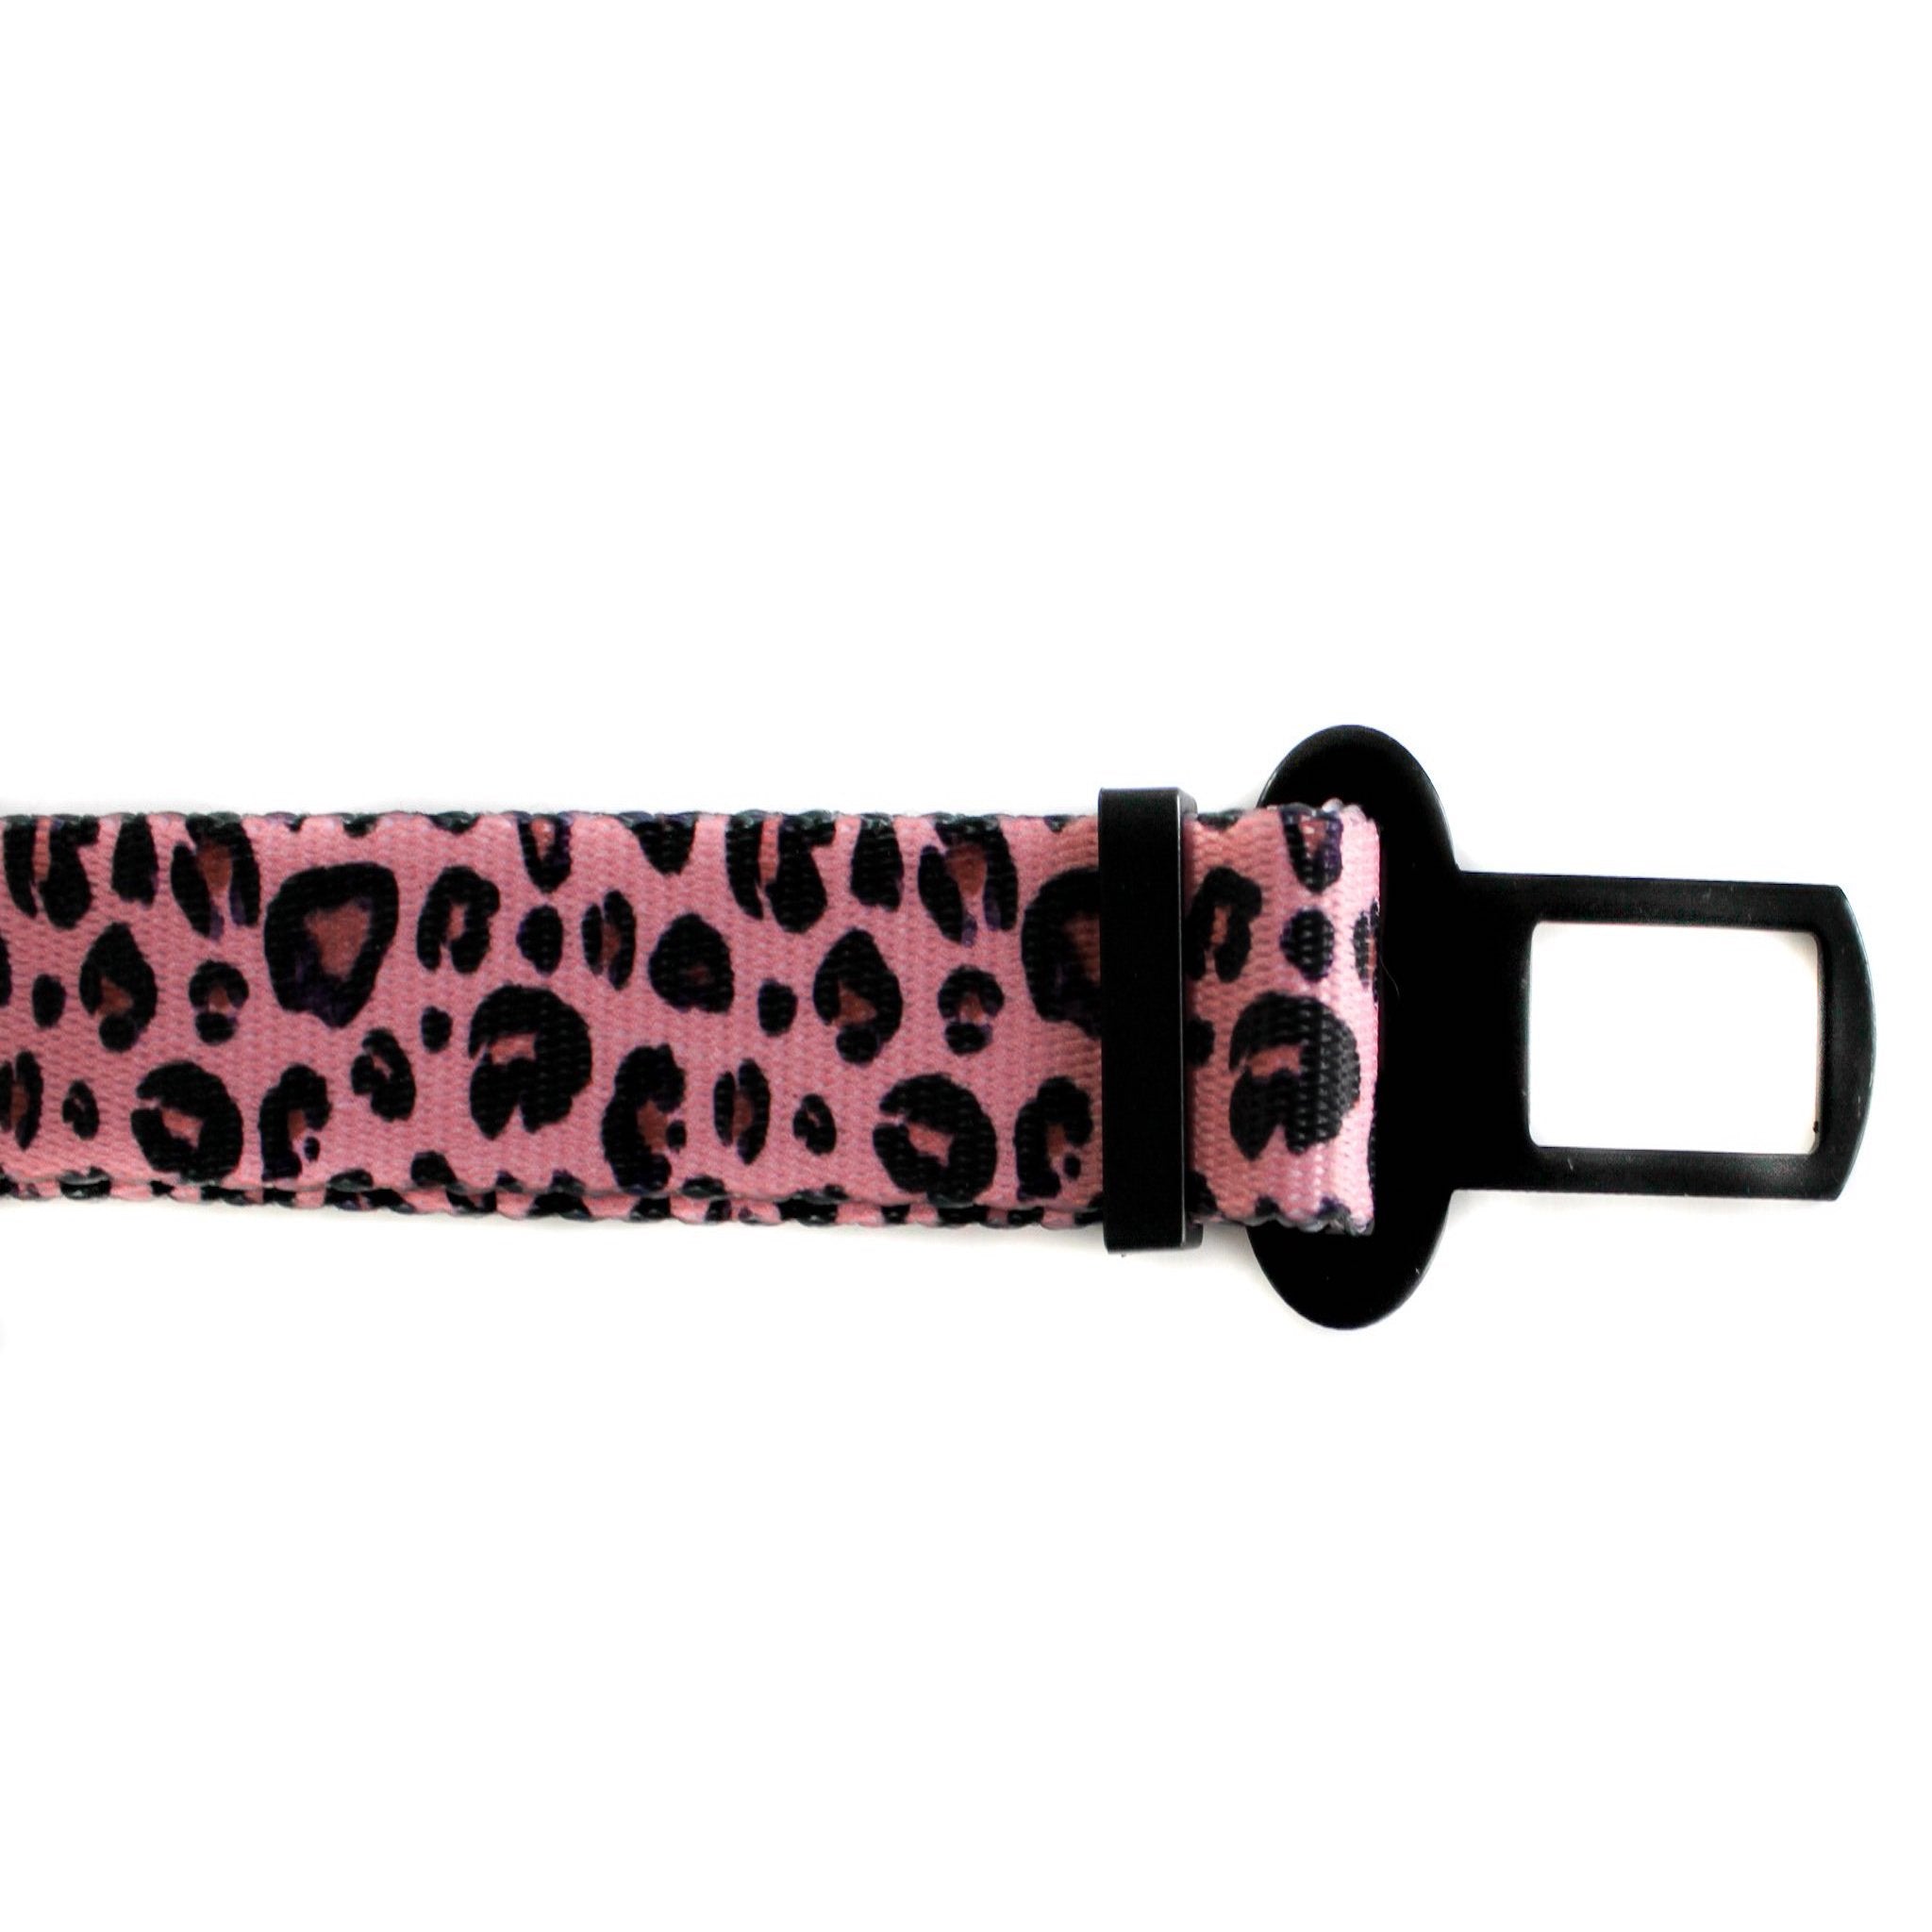 PABLO & CO - Pink Leopard Adjustable Dog Car Restraint